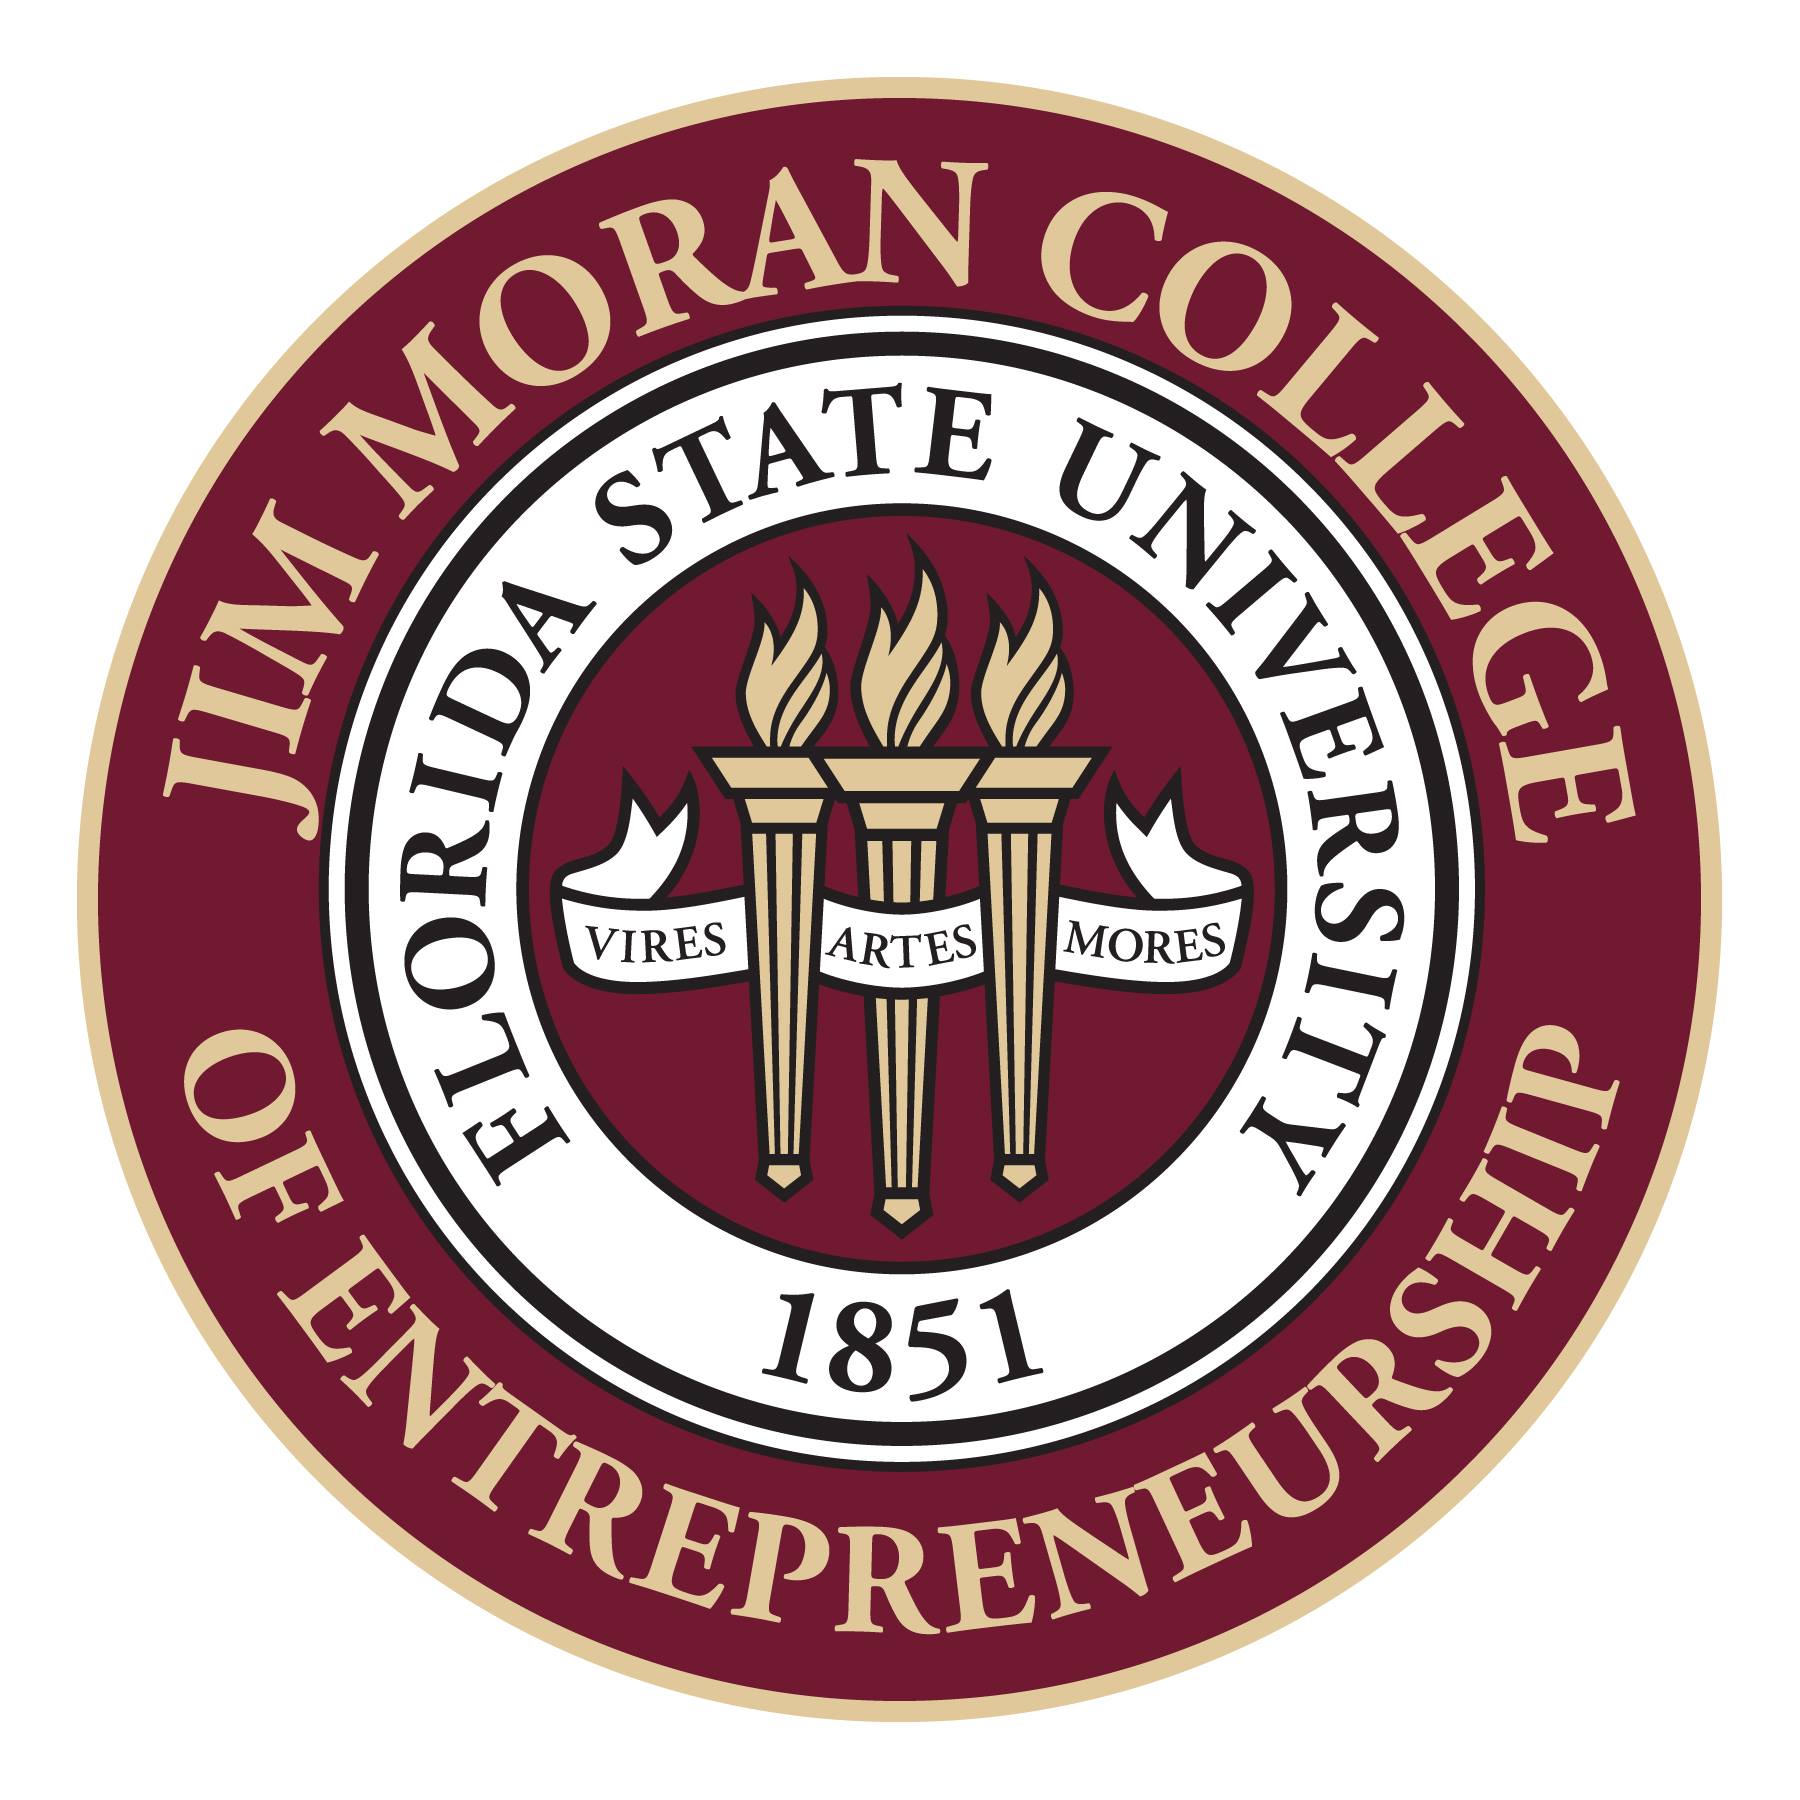 Jim Moran College of Entrepreneurship